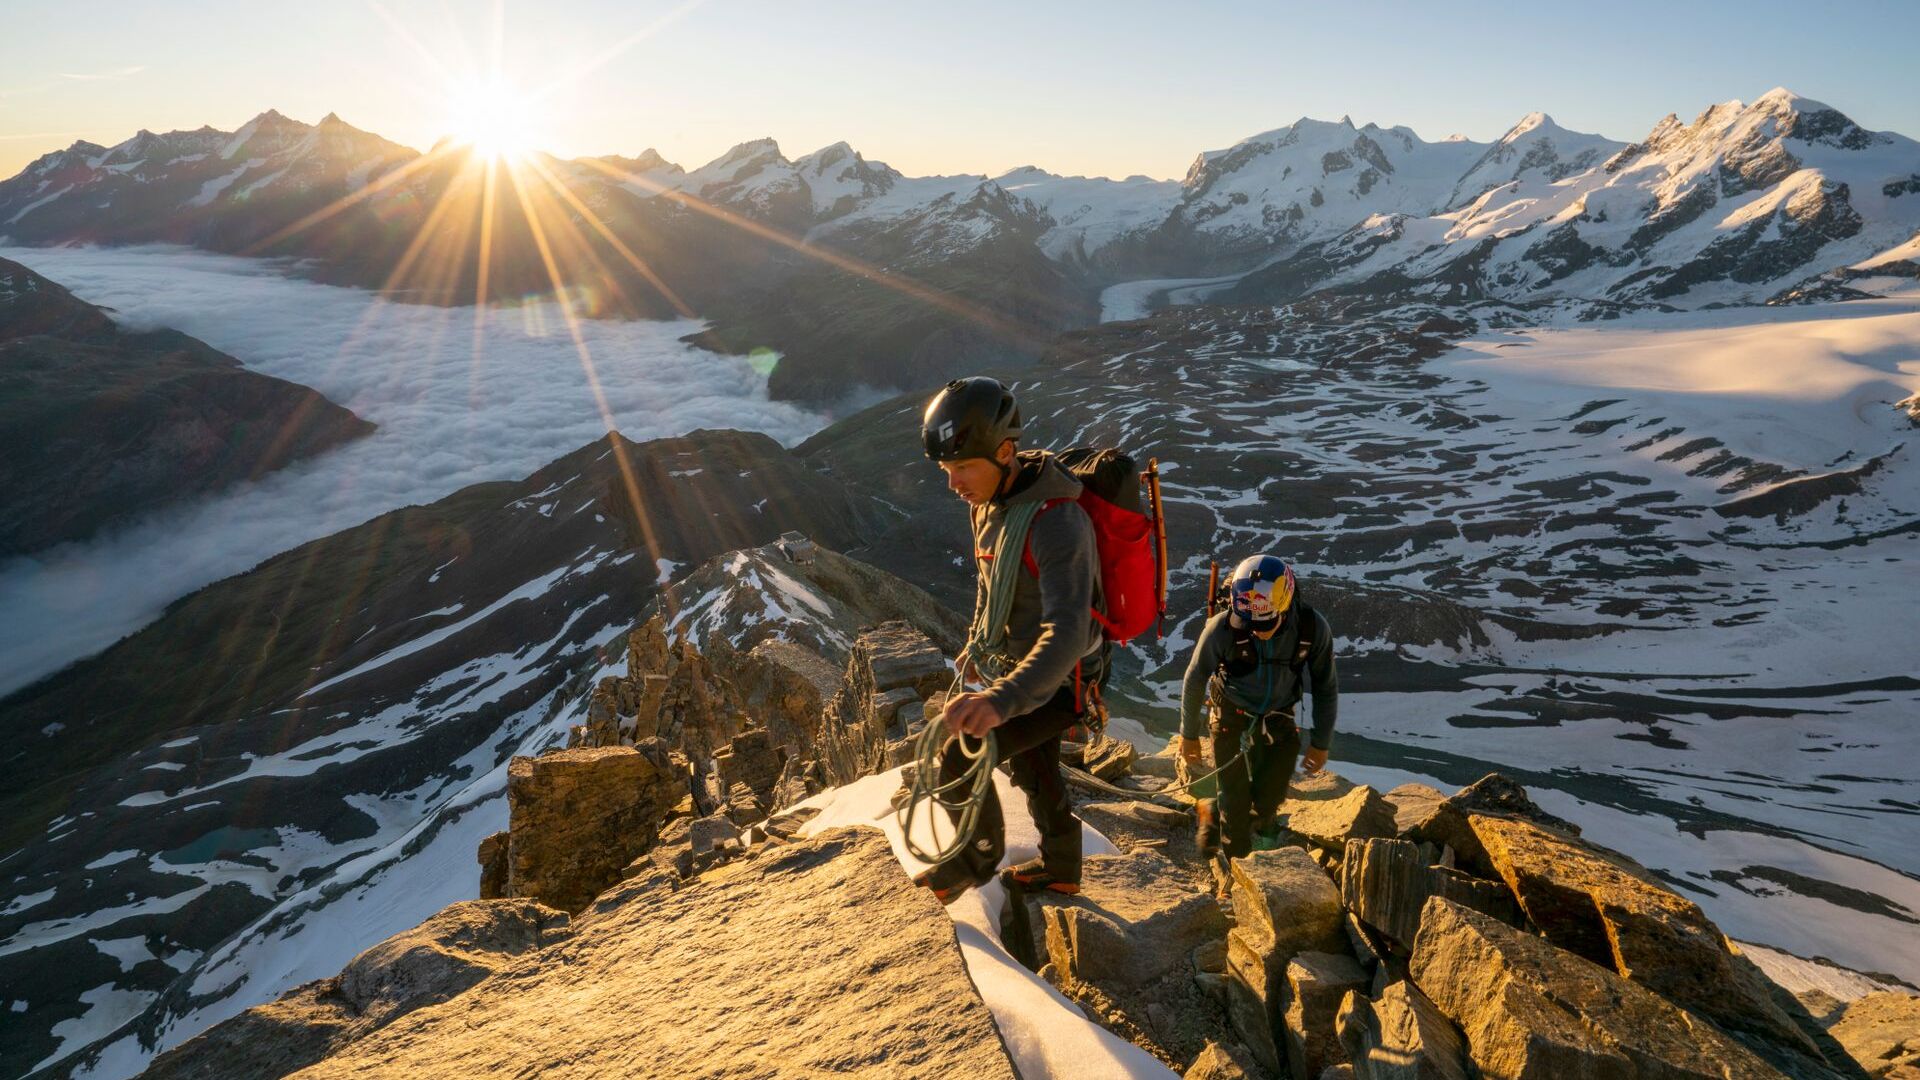 Freeskier Jérémie Heitz 和登山者 Sam Anthamatten 在启发了 Red Bull Switzerland 的真正马特洪峰攀登过程中